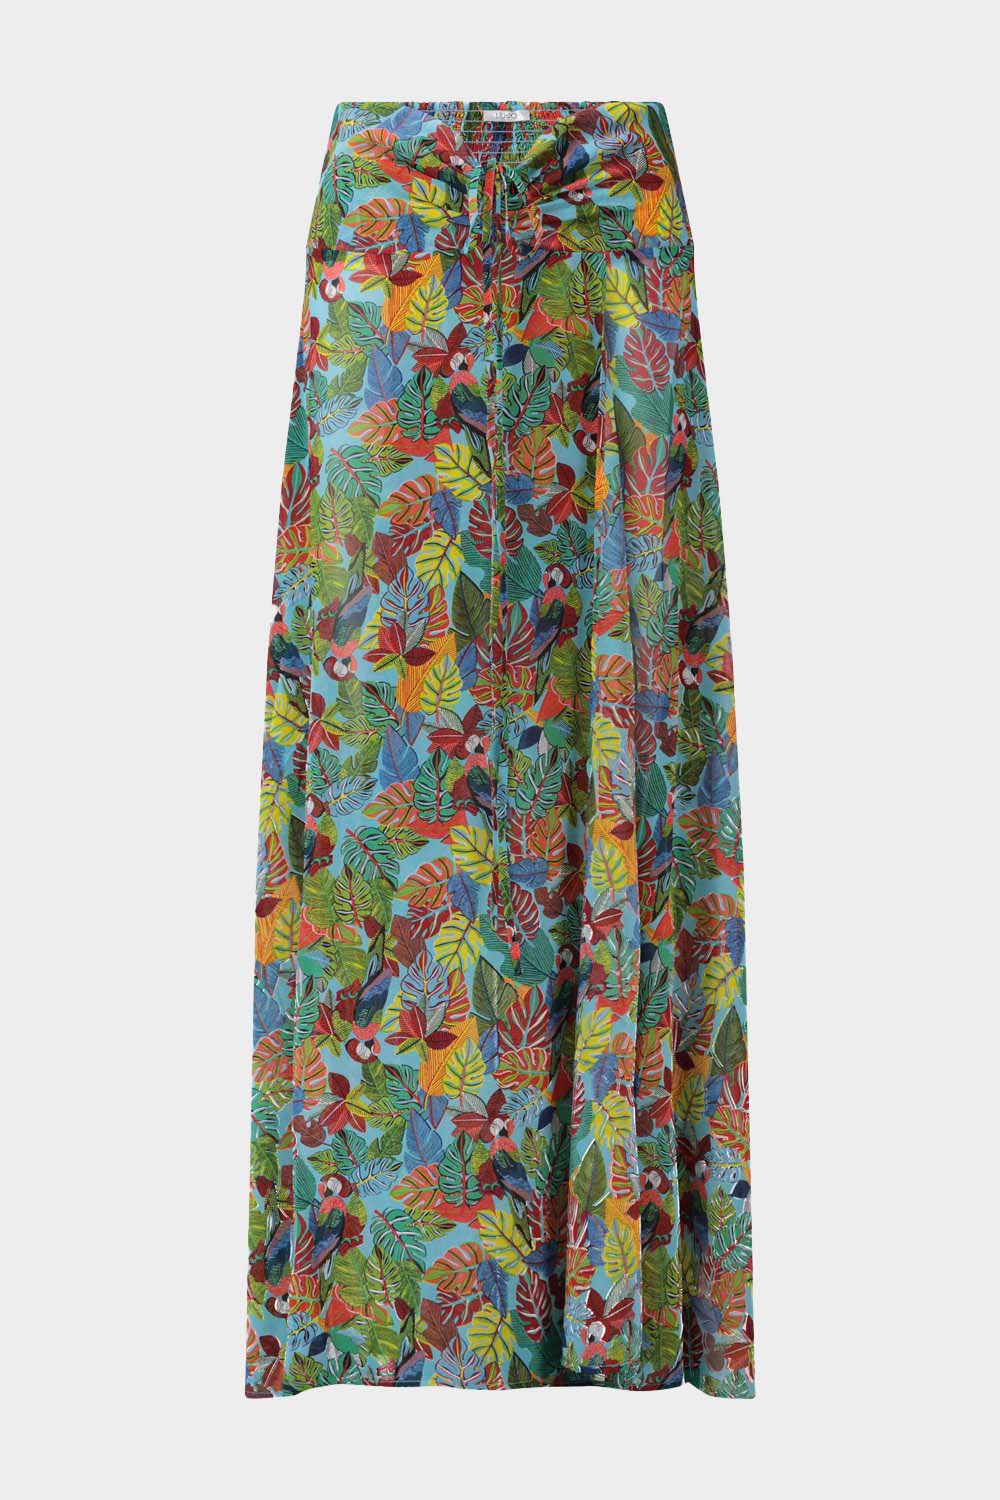 שמלה ארוכה לנשים הדפס פרחוני LIU JO Vendome online | ונדום .